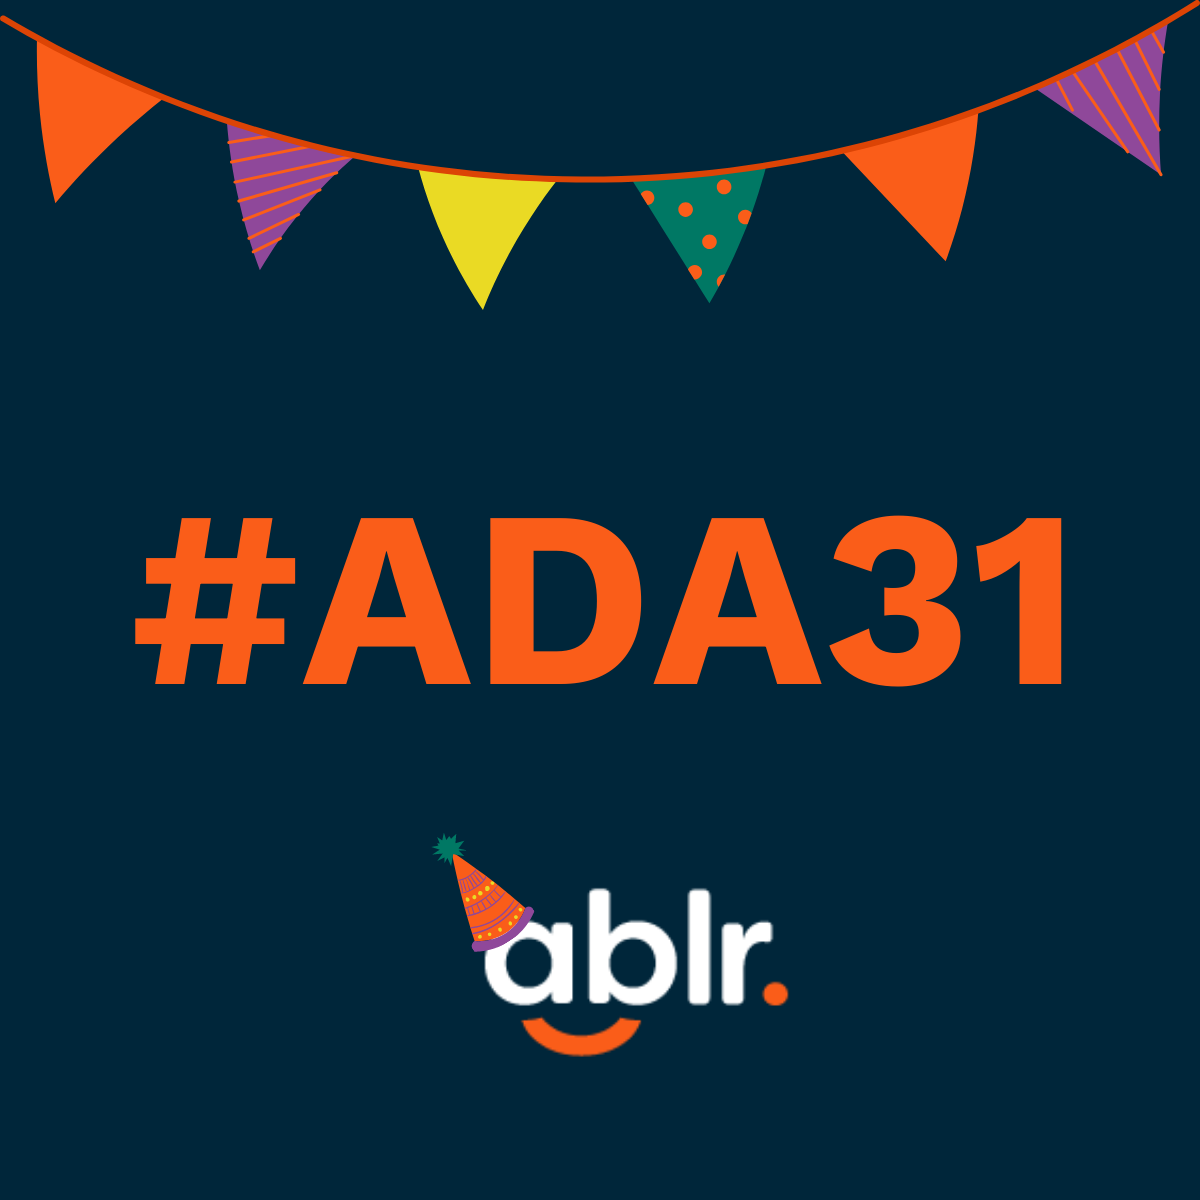 Celebrate #ADA31